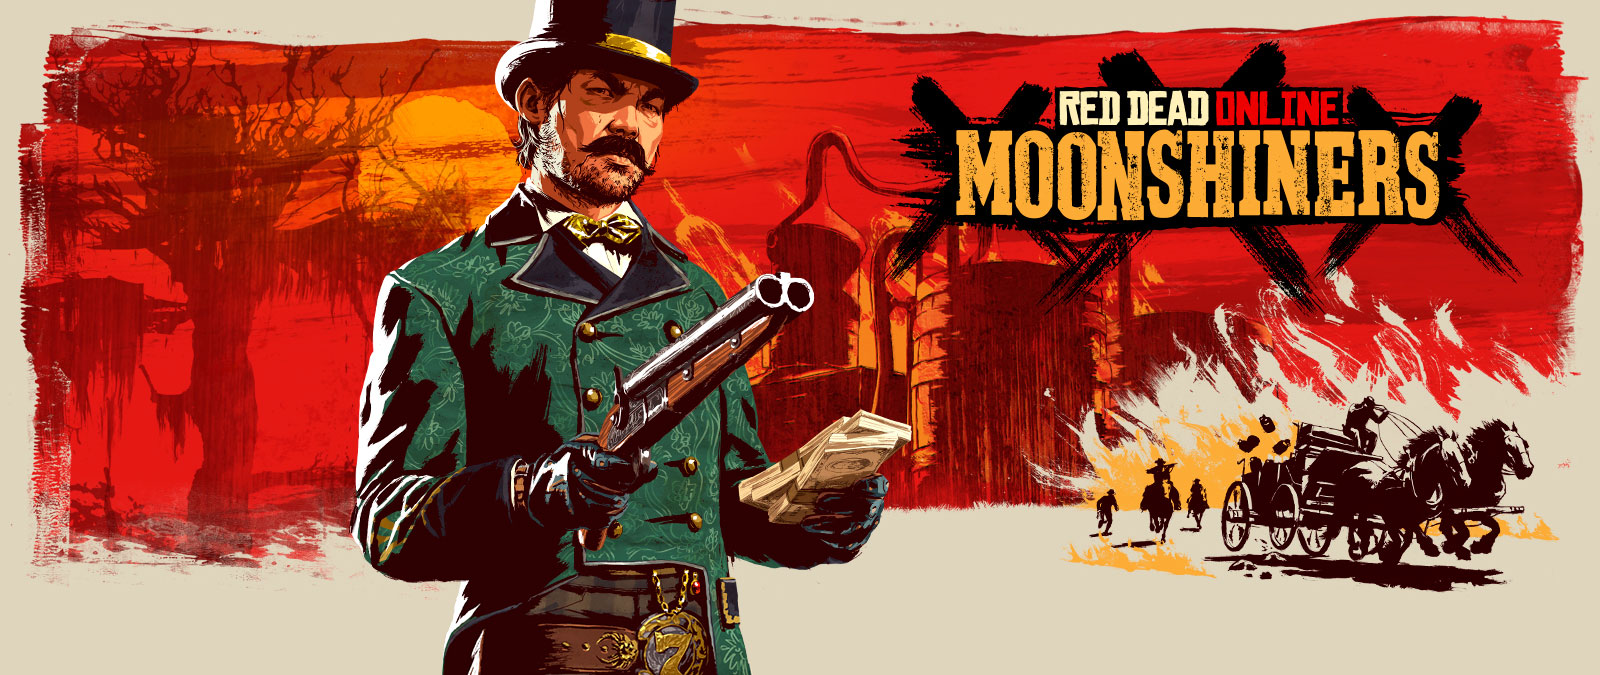 Red Dead Online, Moonshiners, ein unheimlich aussehender Mann hält eine Waffe und einen Stapel Bargeld, stilistischer Hintergrund eines Mondschein-Setups und eine Verfolgungsjagd. 